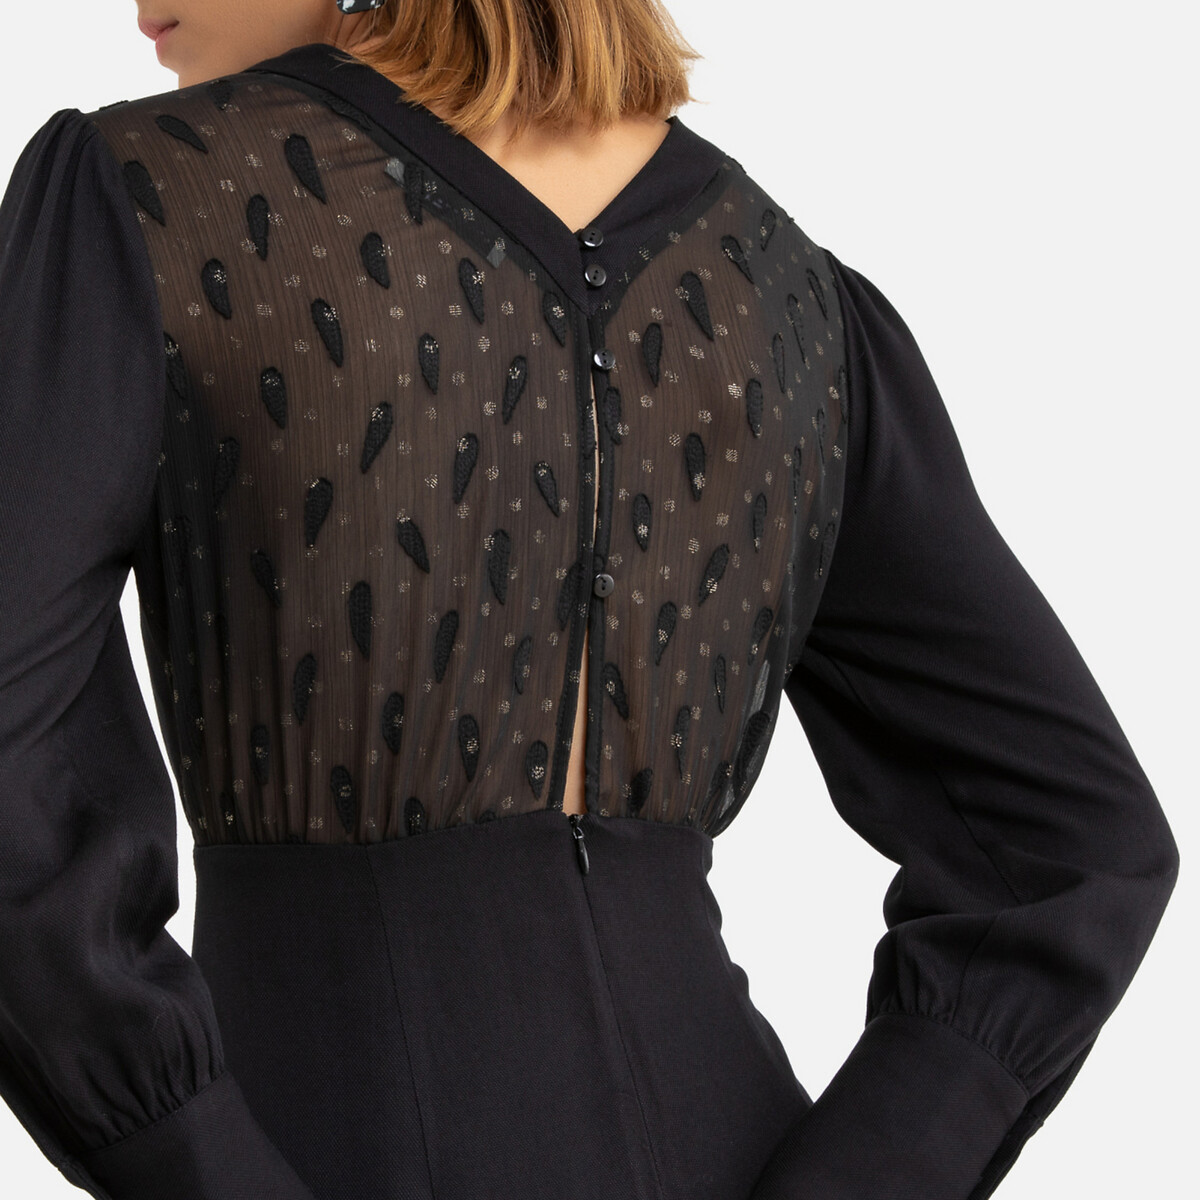 Платье La Redoute Короткое длинные рукава декольте сзади 1(S) черный, размер 1(S) Короткое длинные рукава декольте сзади 1(S) черный - фото 3